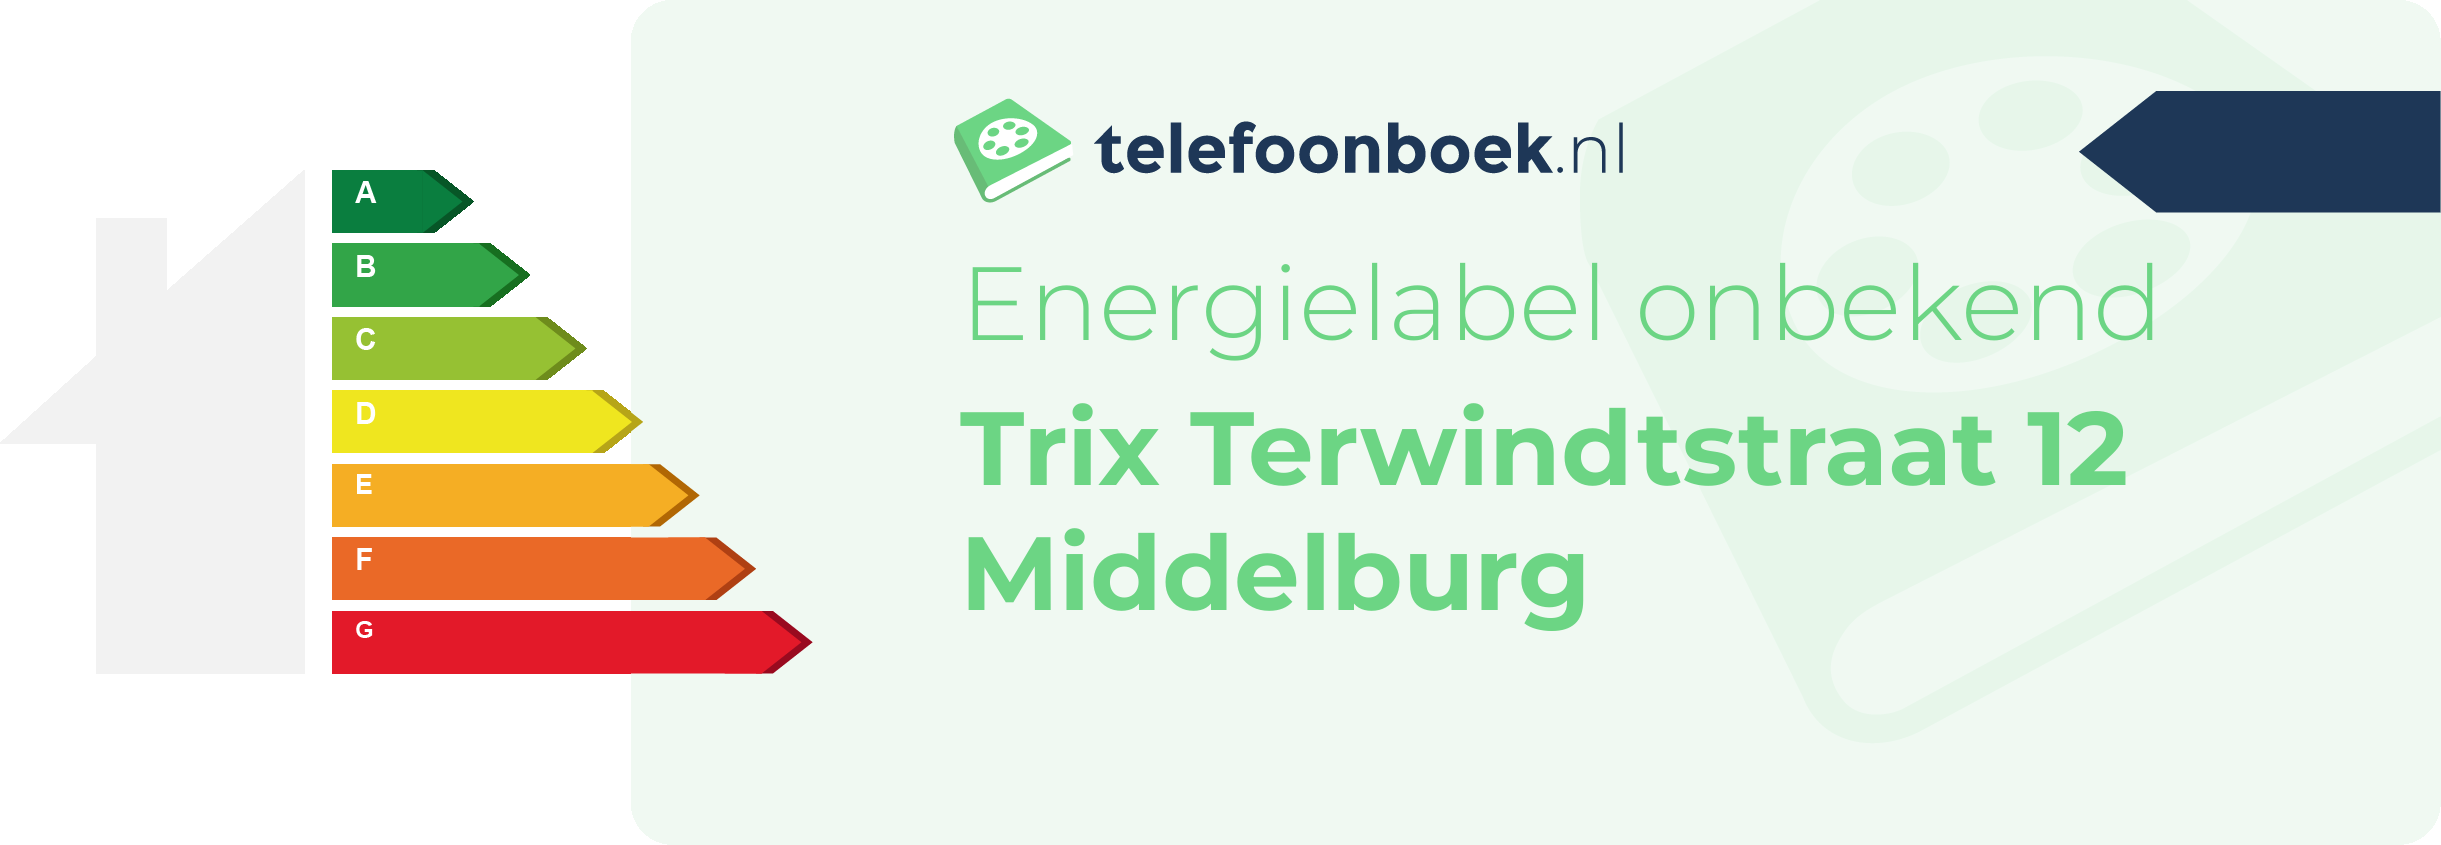 Energielabel Trix Terwindtstraat 12 Middelburg